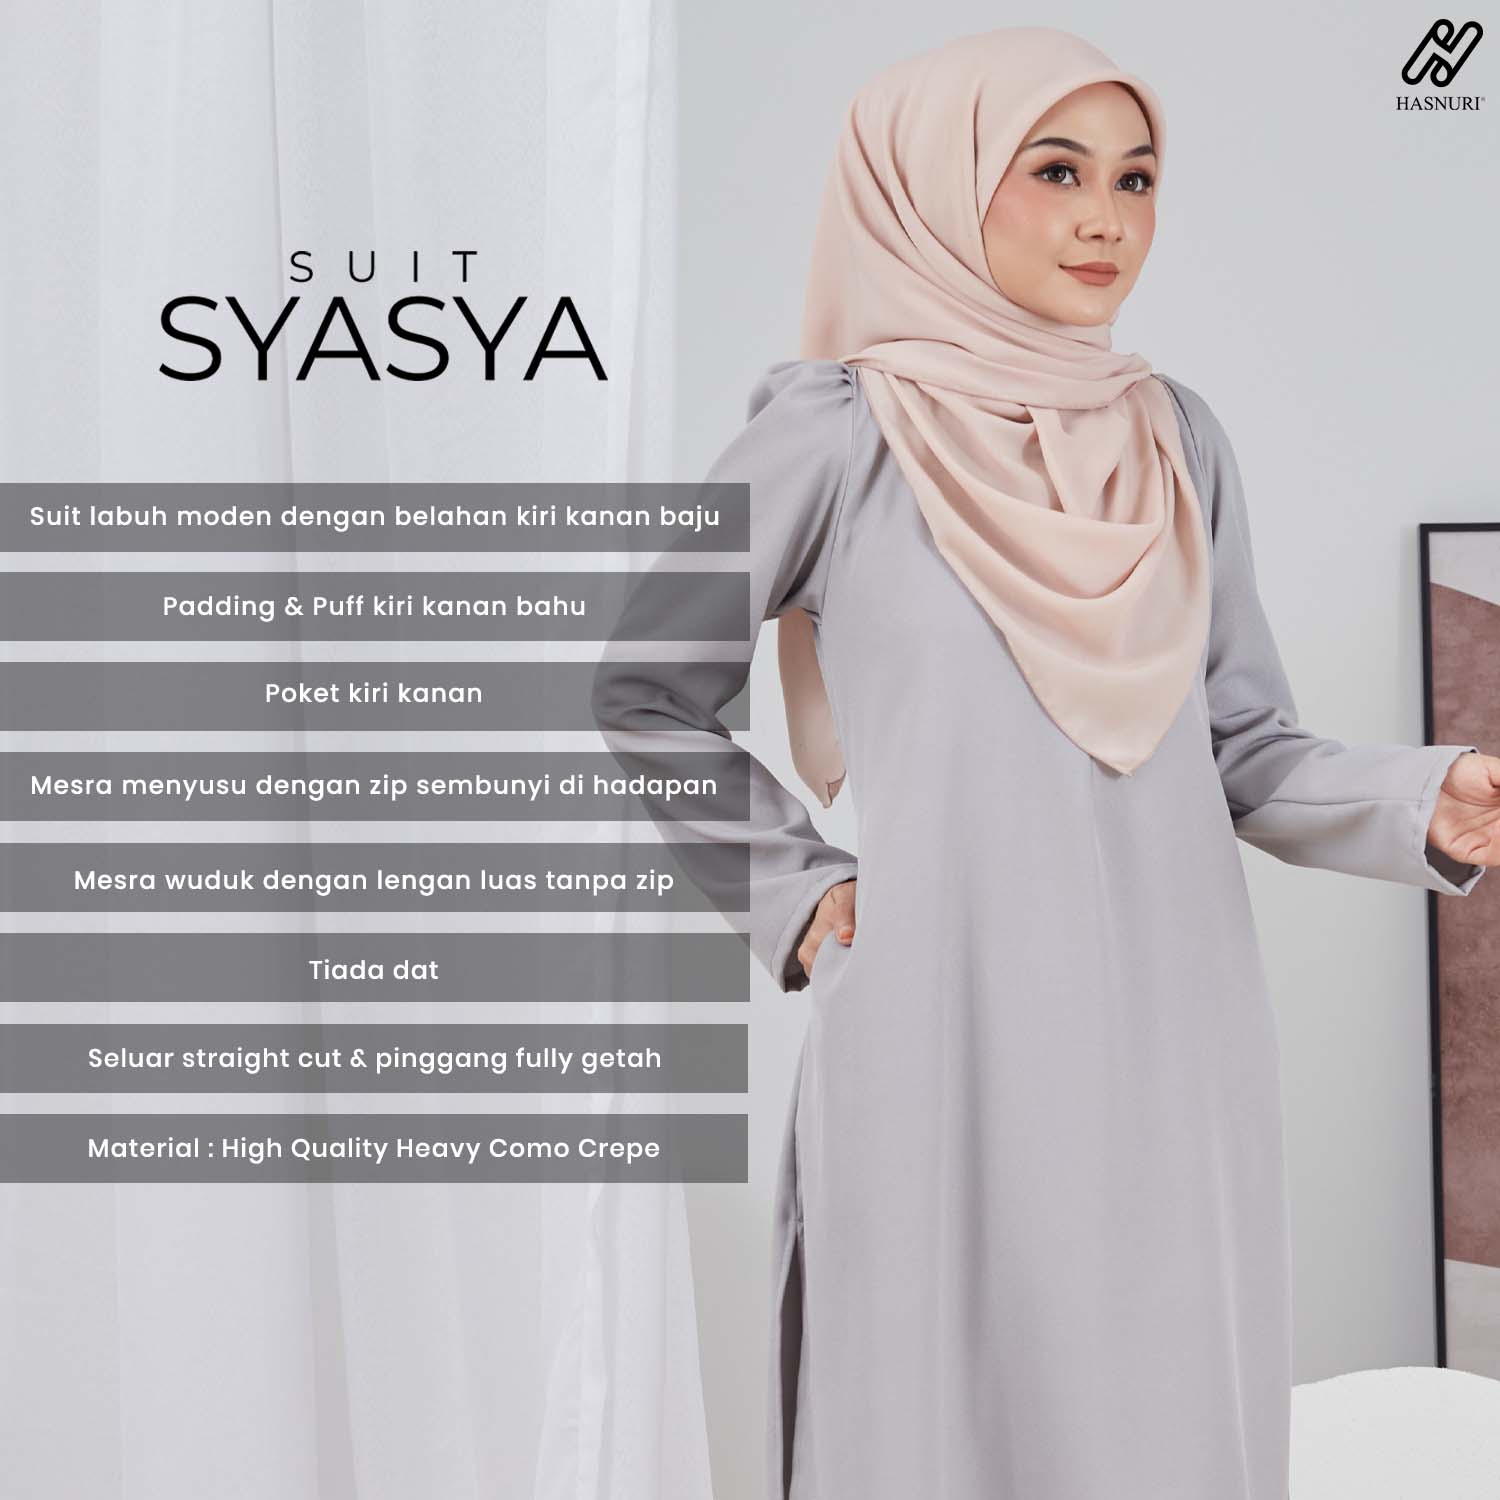 Suit Syasya - Off White